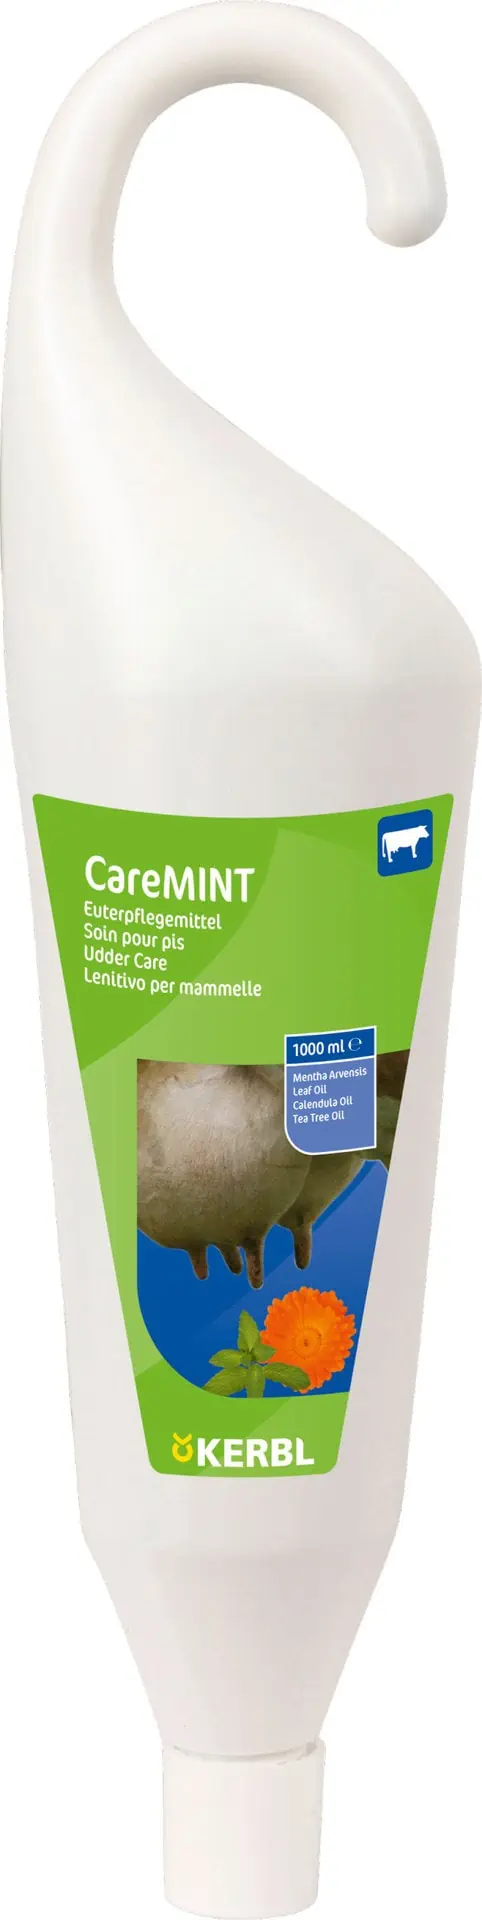 Euterpflegemittel CareMINT 1000 ml Hängeflasche